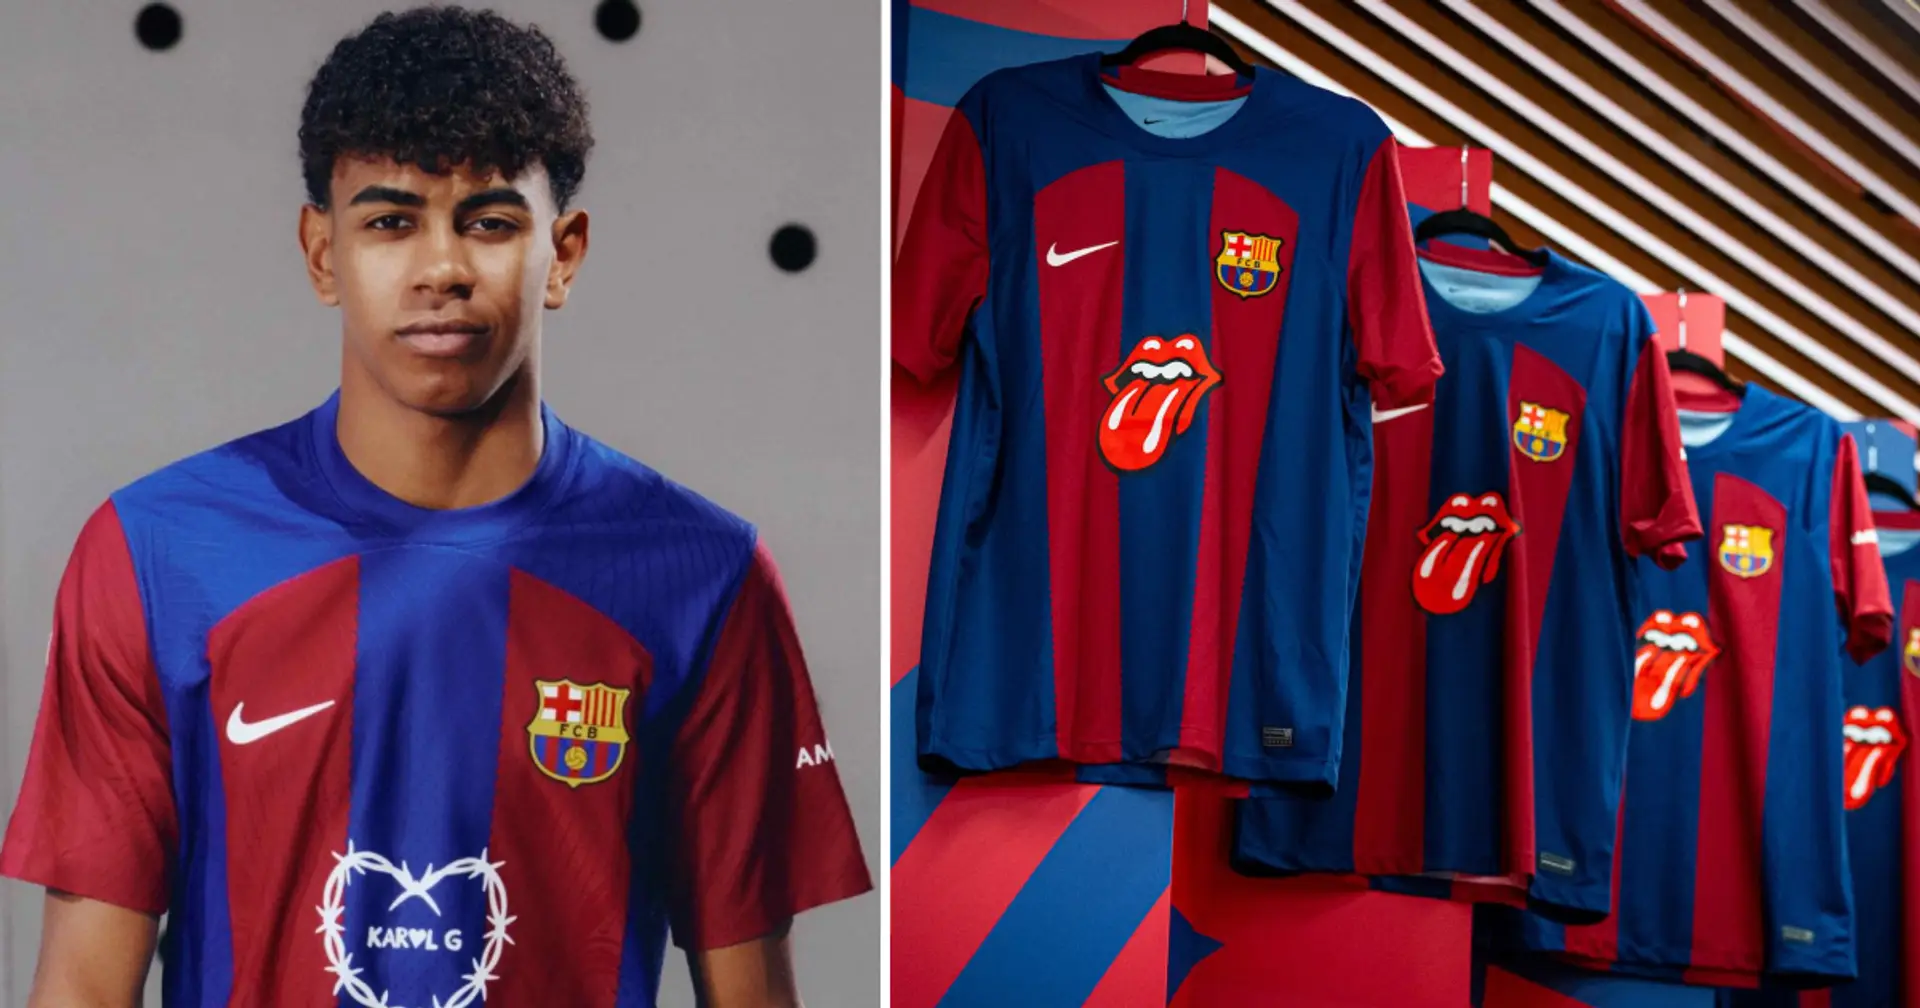 Le Barça reçoit une offre de sponsoring de maillot sur 10 ans – cela pourrait résoudre ses problèmes financiers